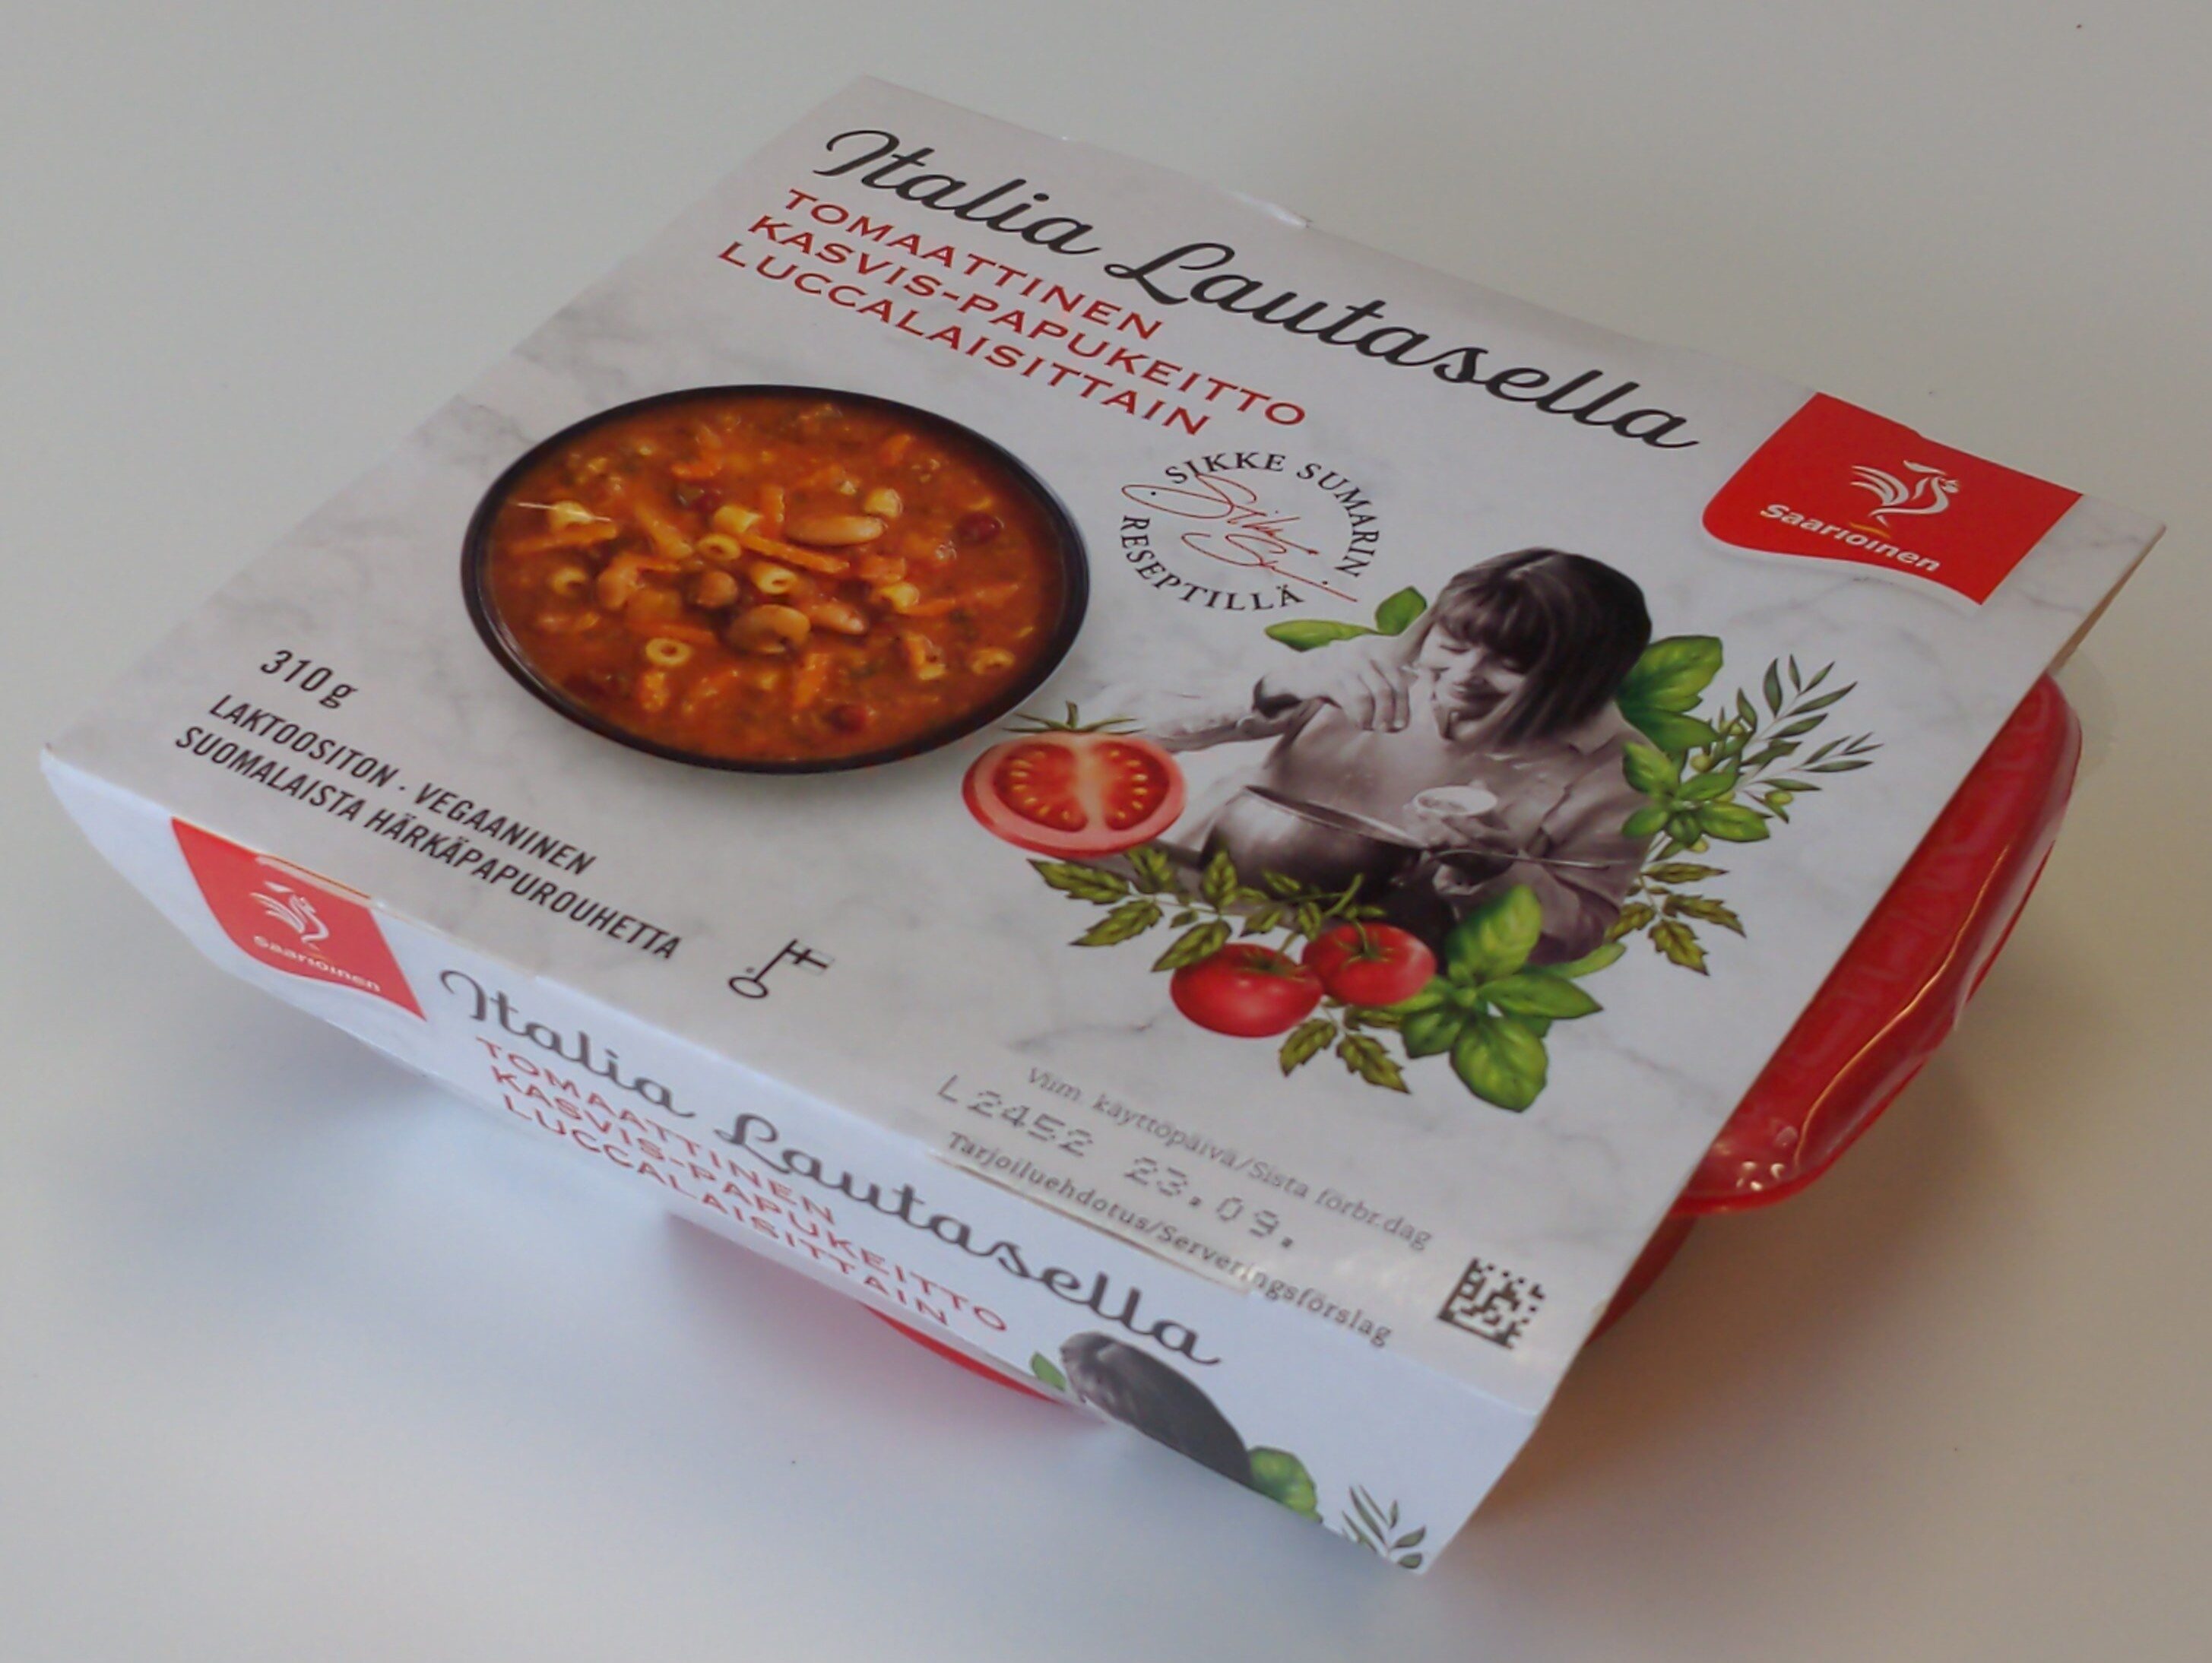 Tomaattinen kasvis-papukeitto luccalaisittain - Product - fi